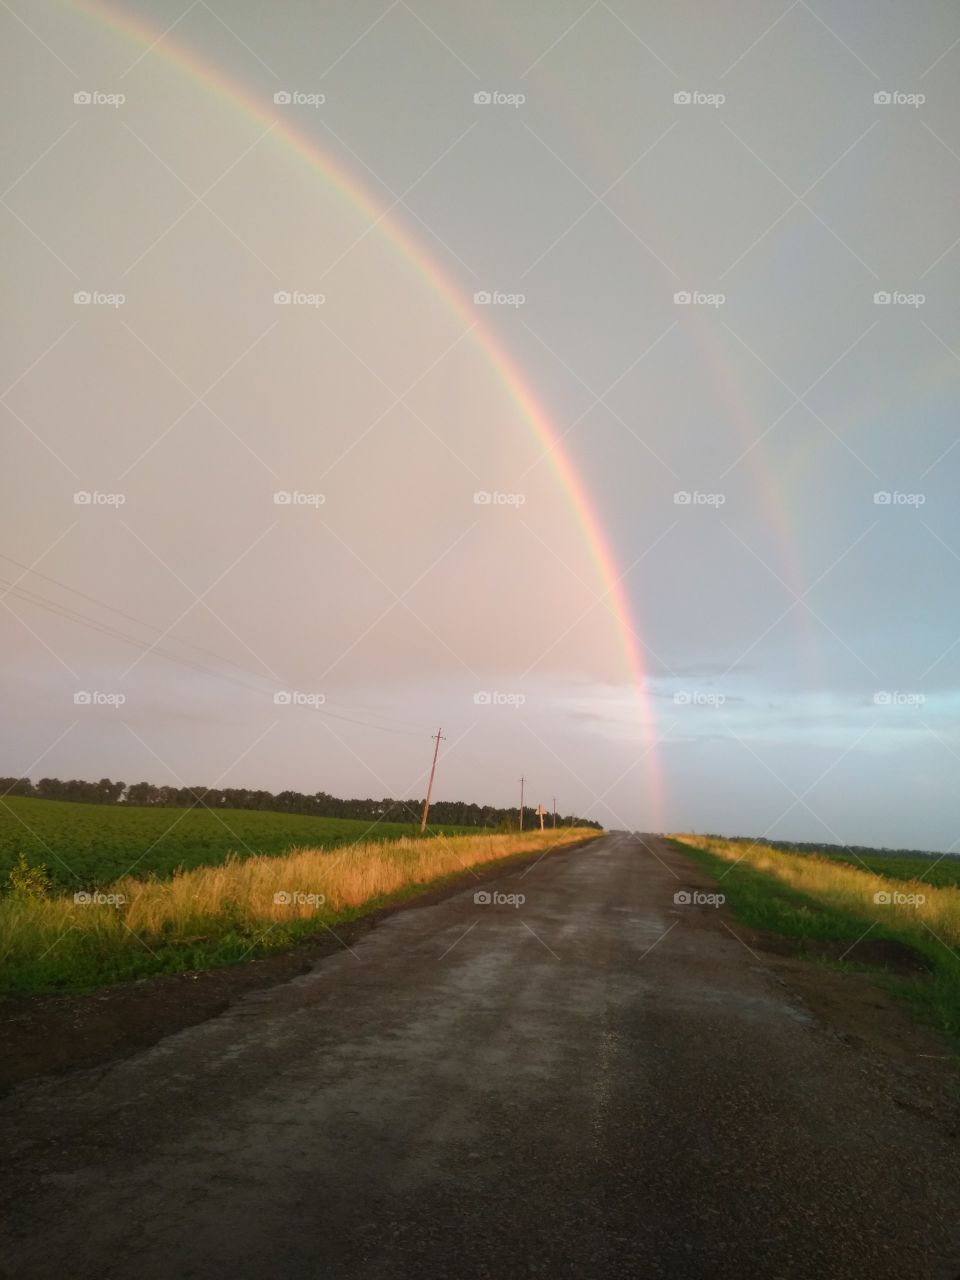 дорога в глубинке Украины харьковская область радуга после дождя поля слева и справа